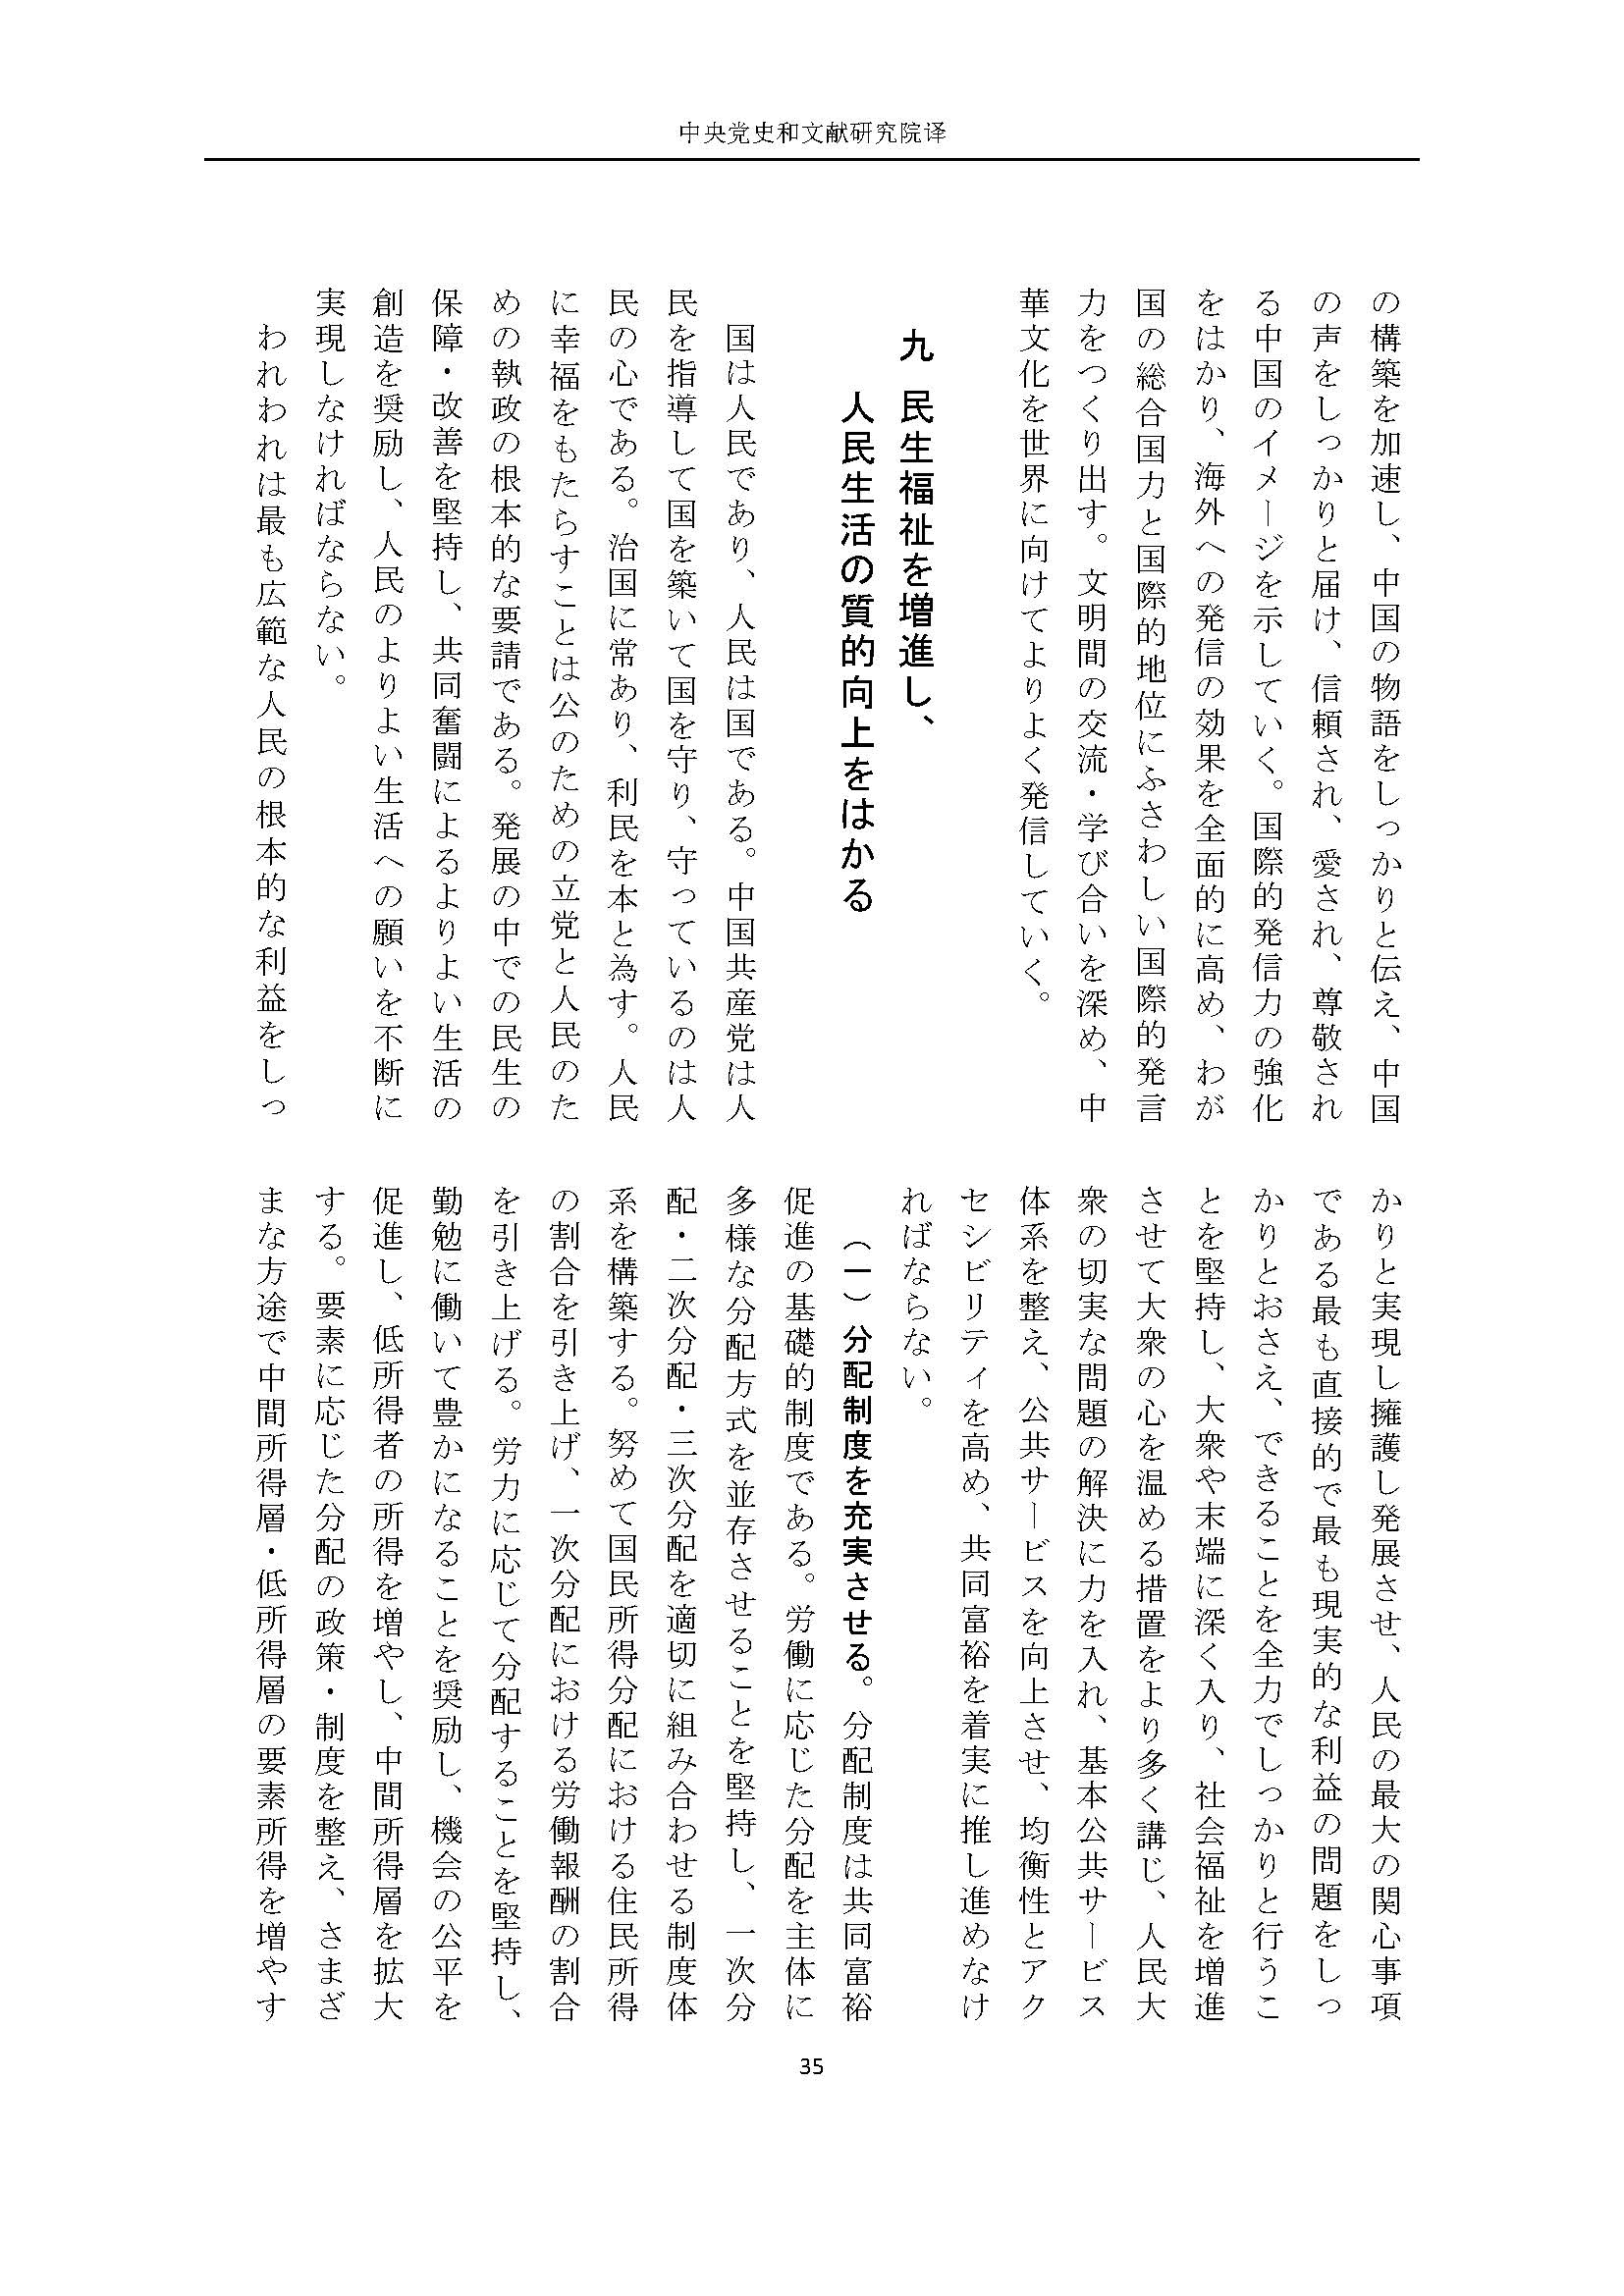 二十大报告（日文全文）_页面_36